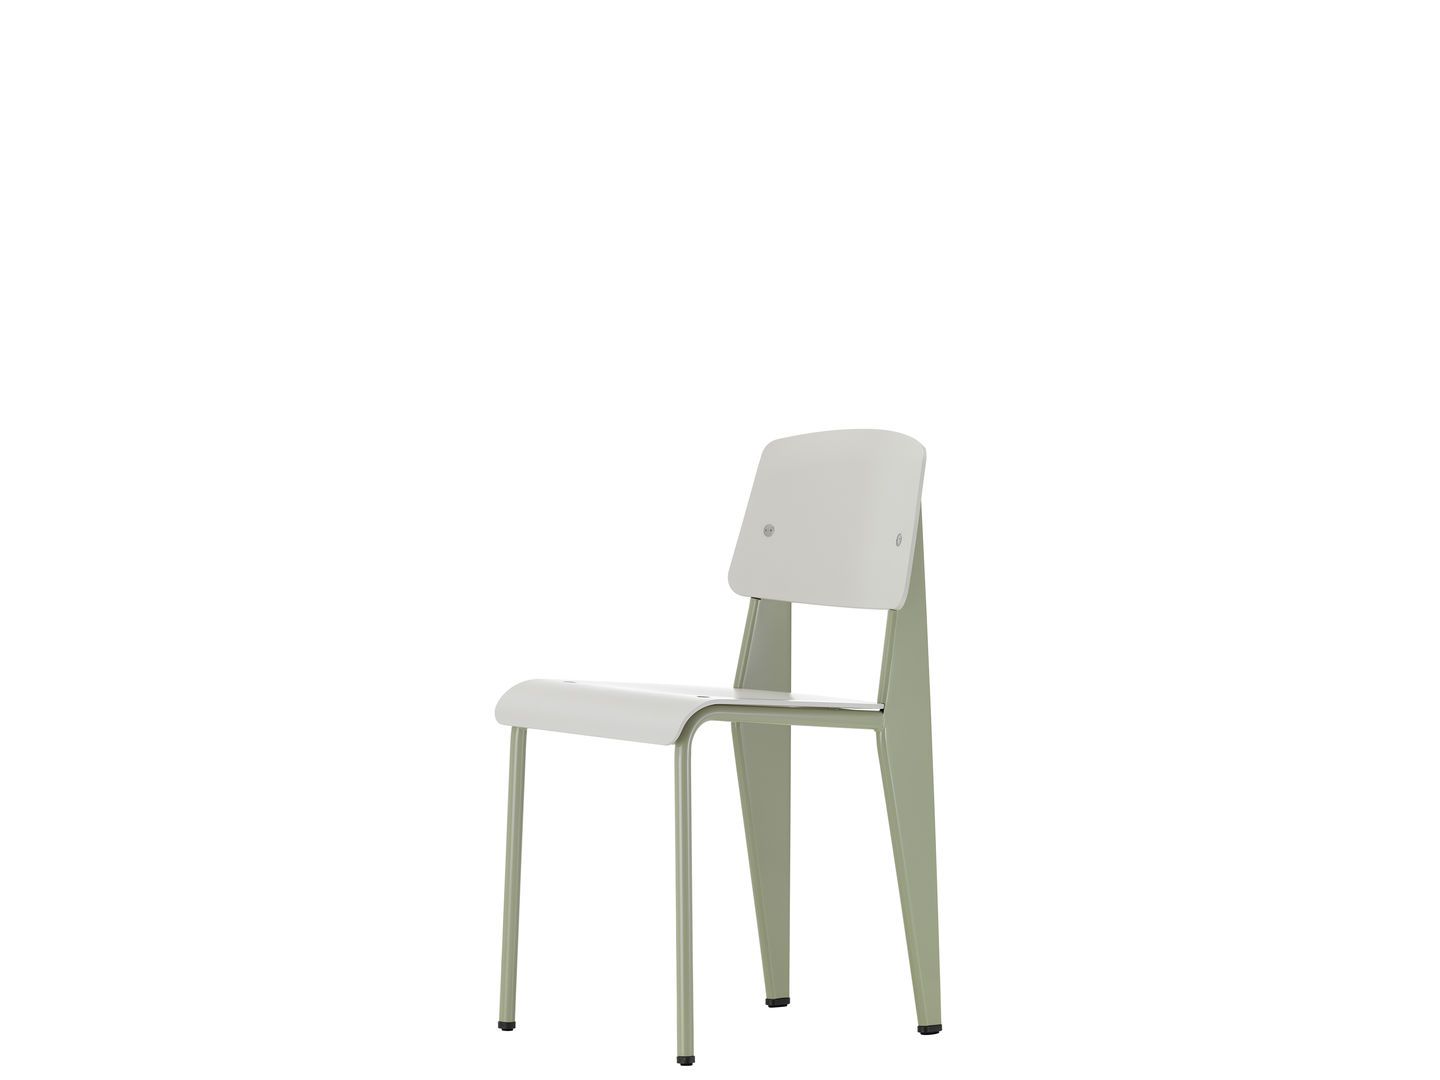 Standard SP | One52 Furniture 